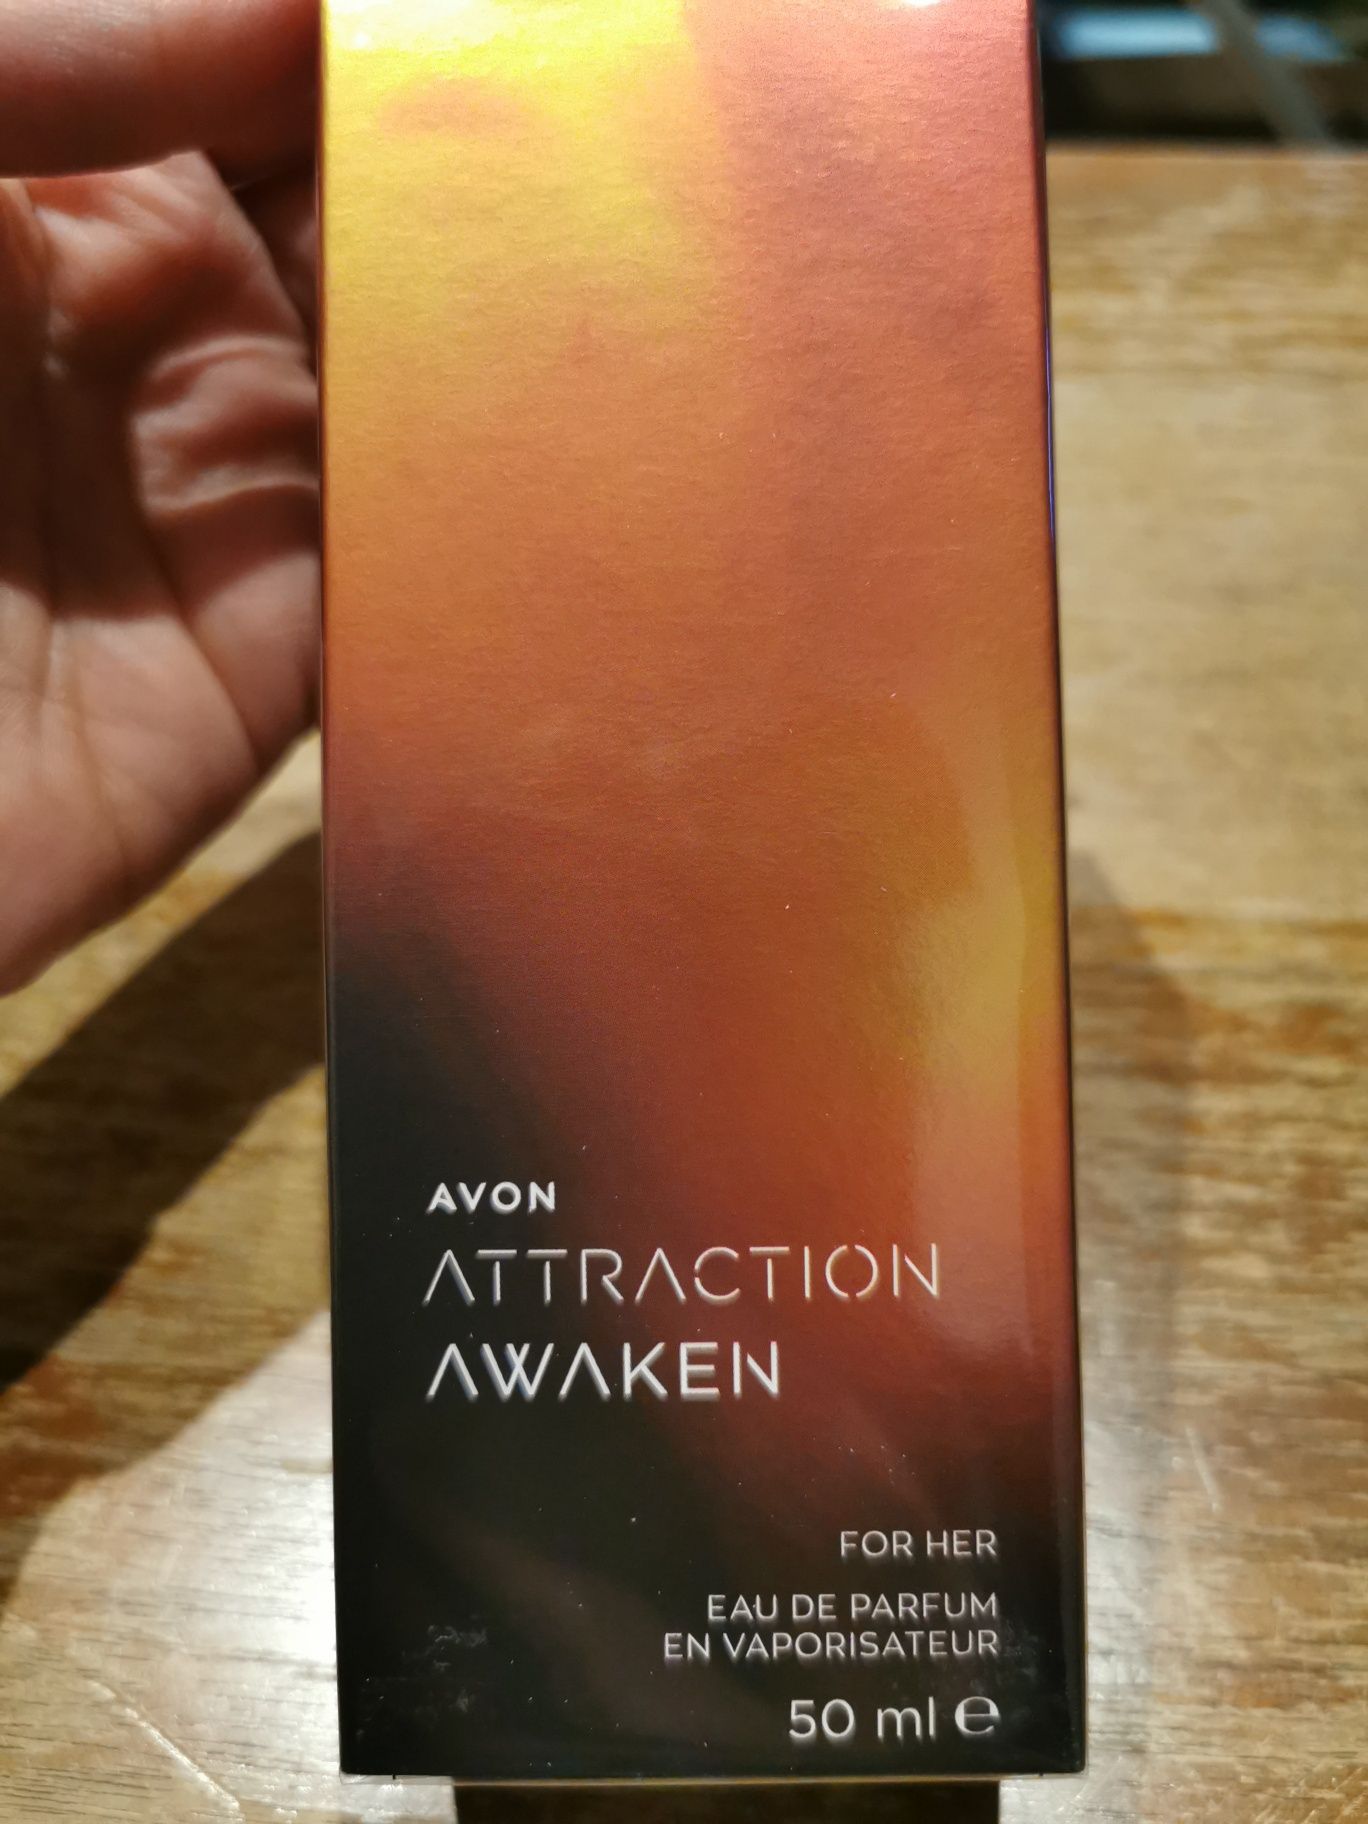 Attraction awaken